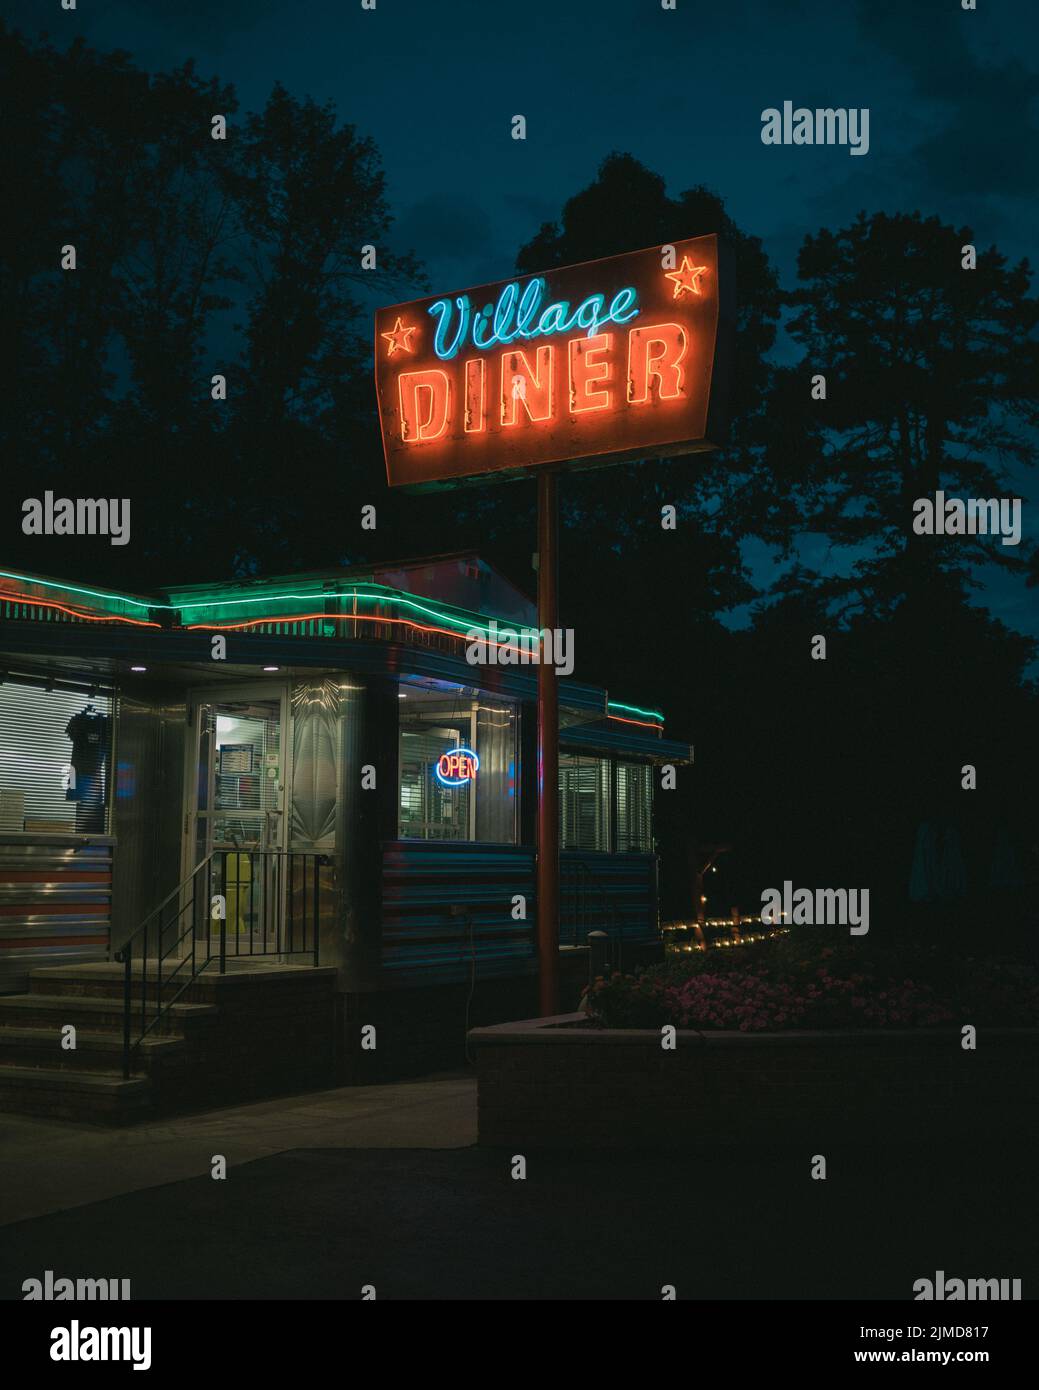 Village Diner, cartel de neón clásico por la noche, Milford, Pensilvania Foto de stock